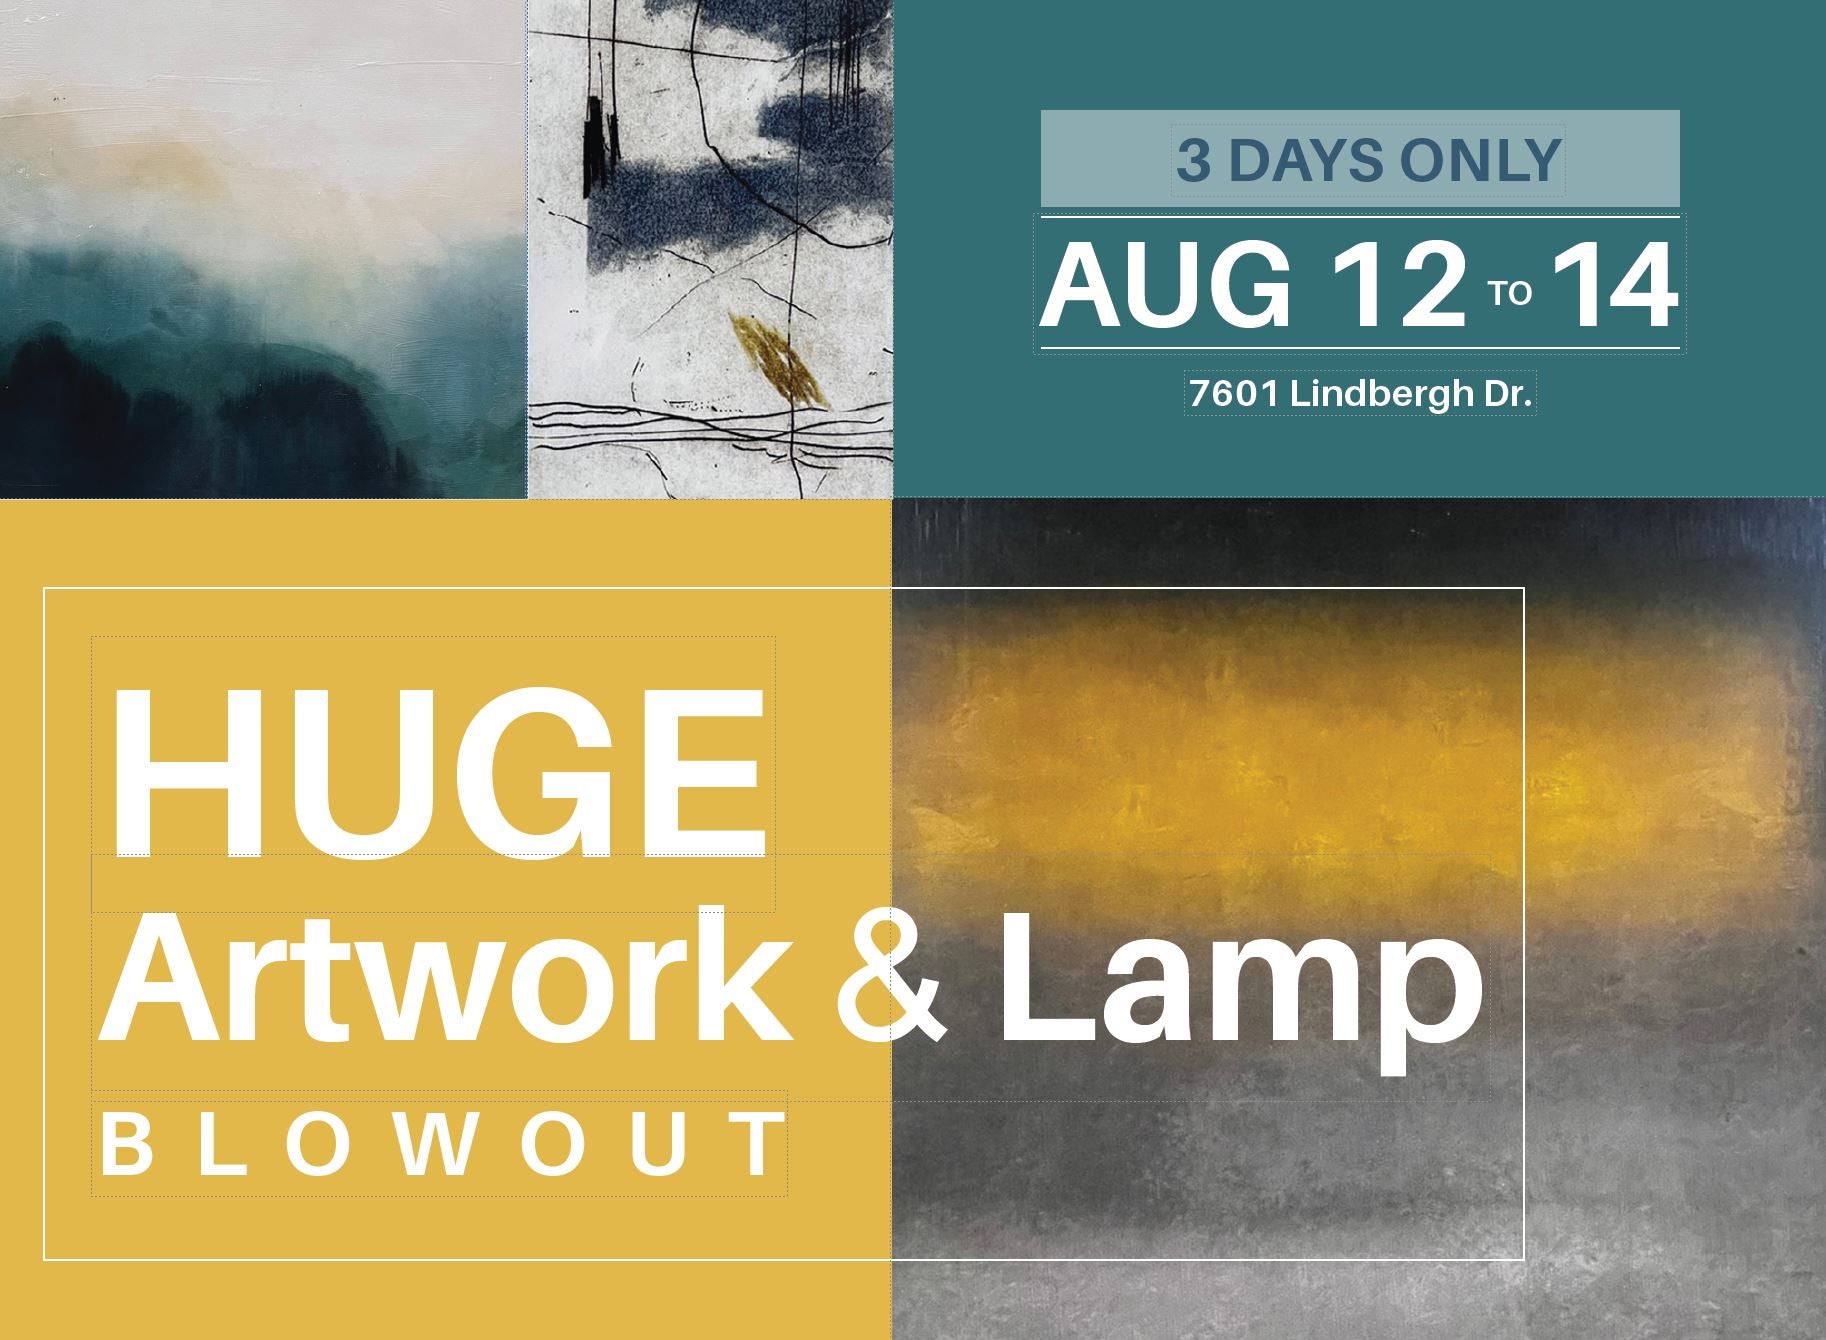 Huge Artwork & Lamps Blowout